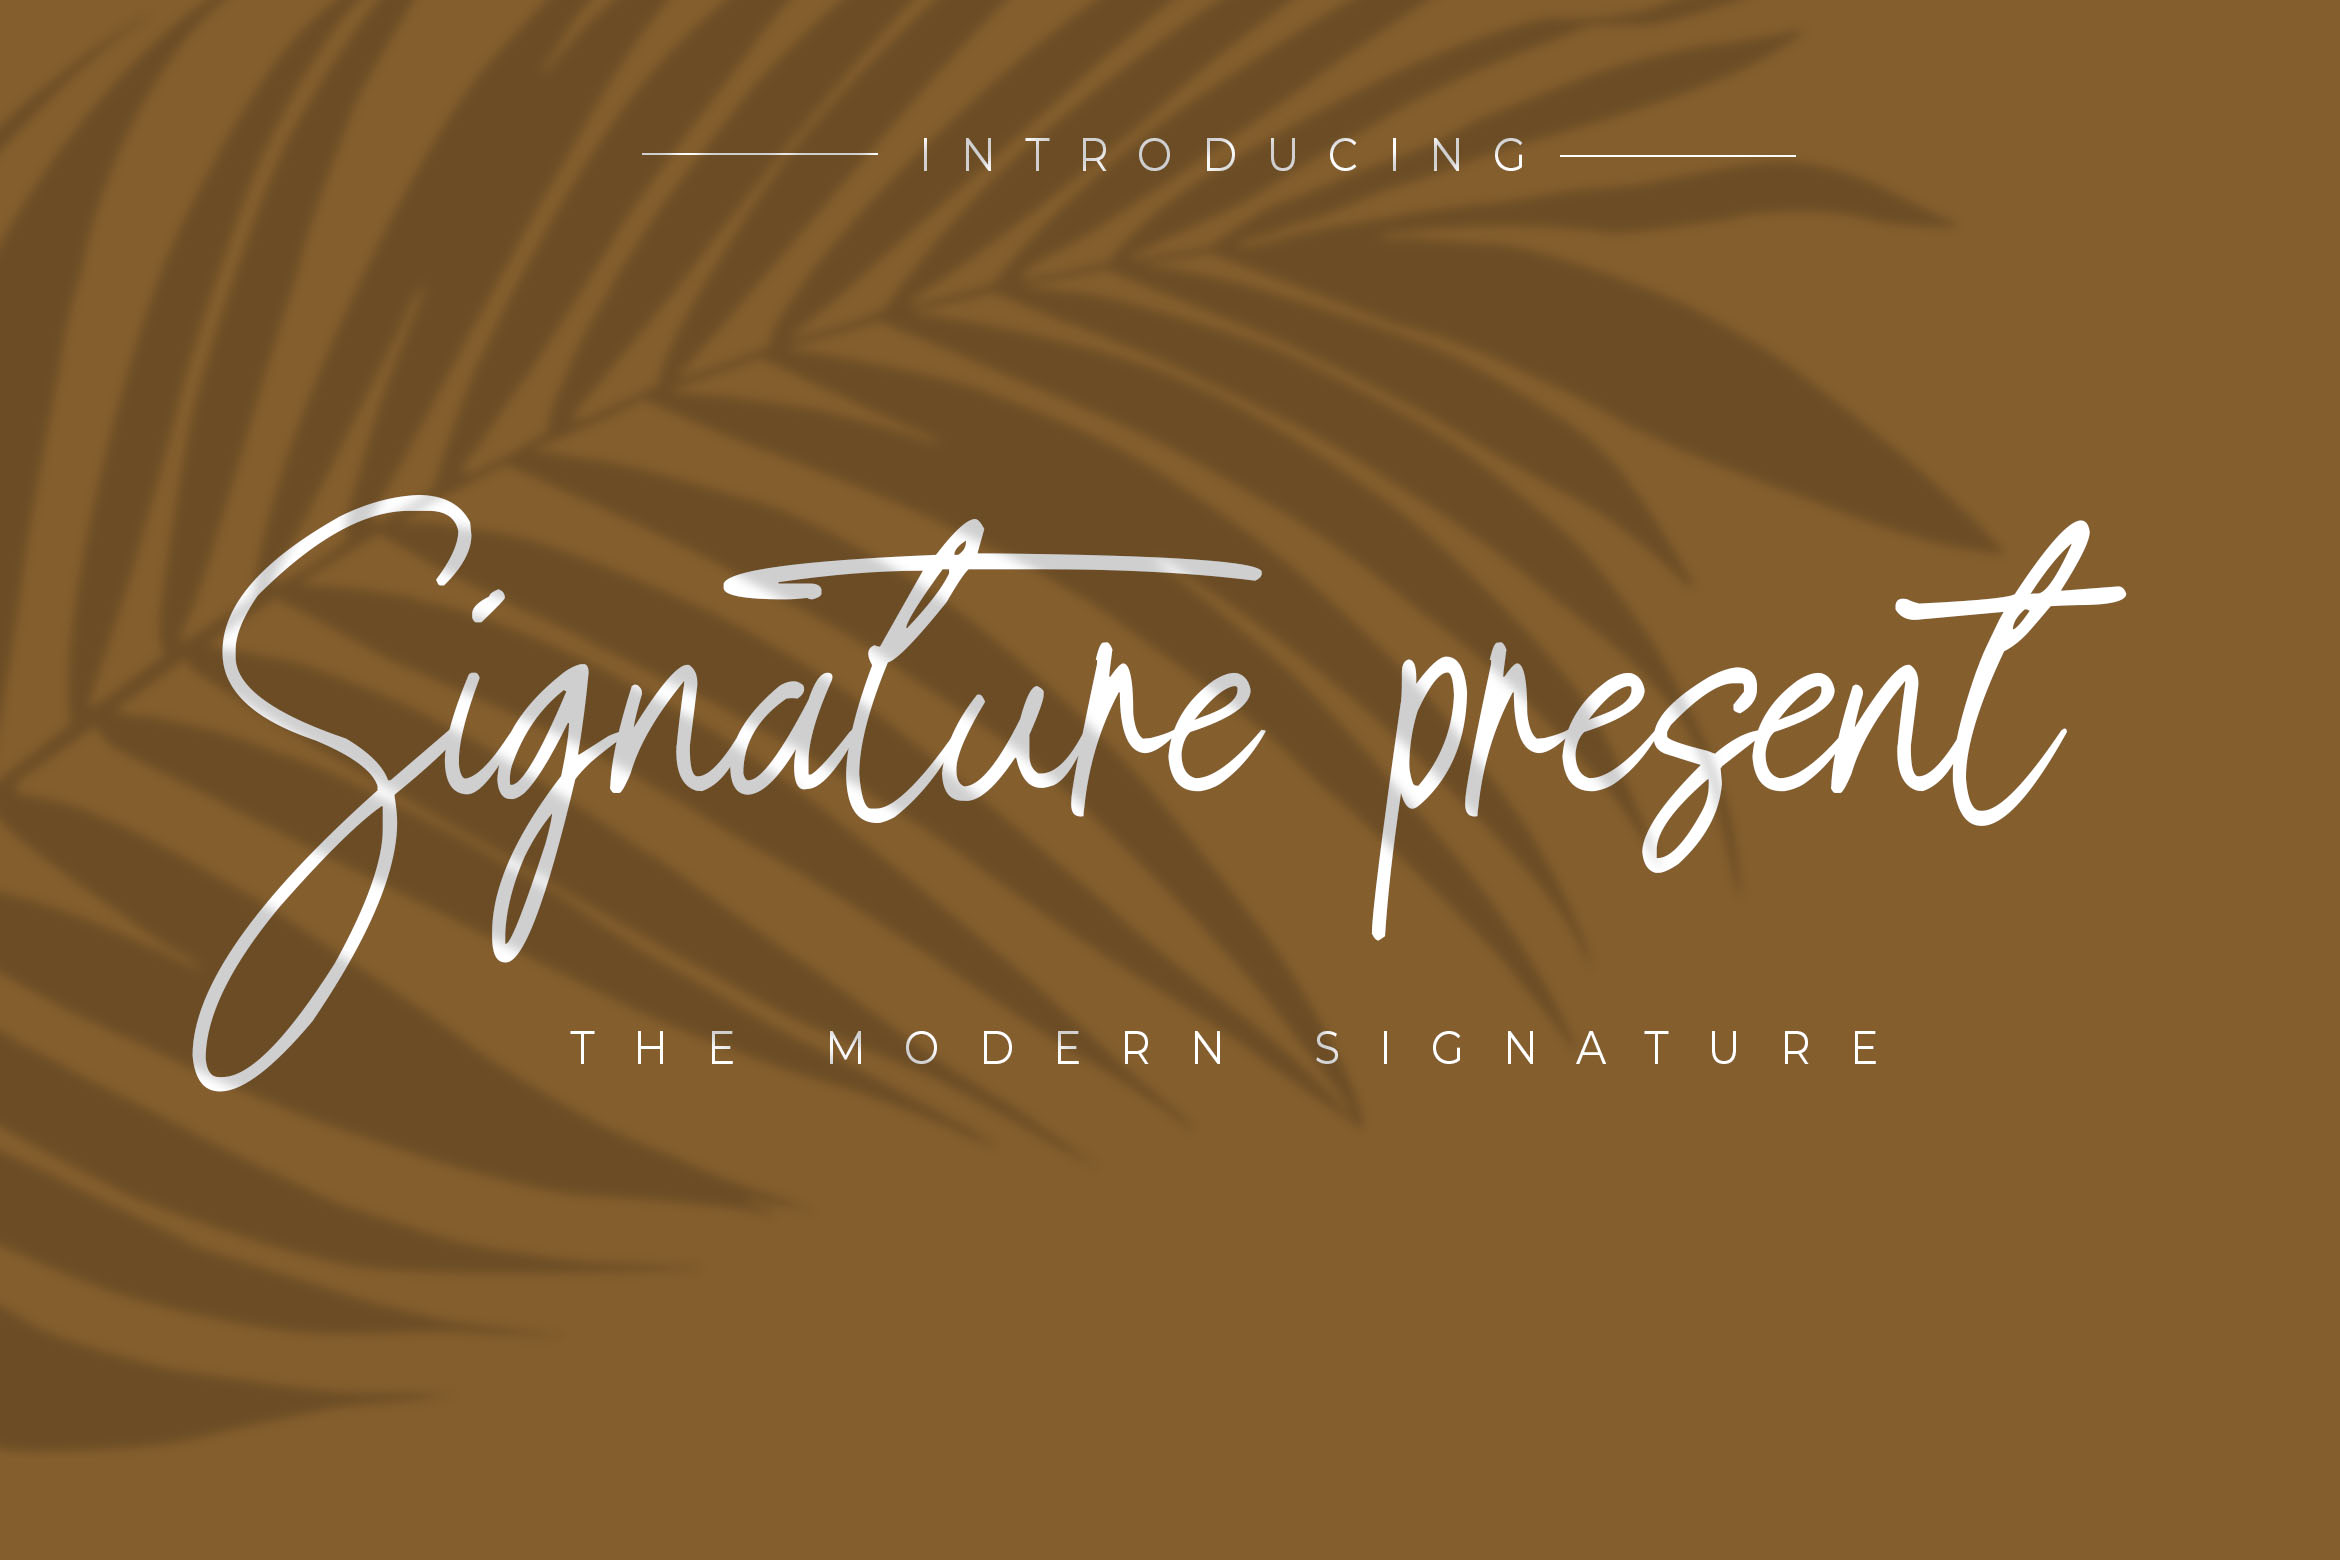 Signature present